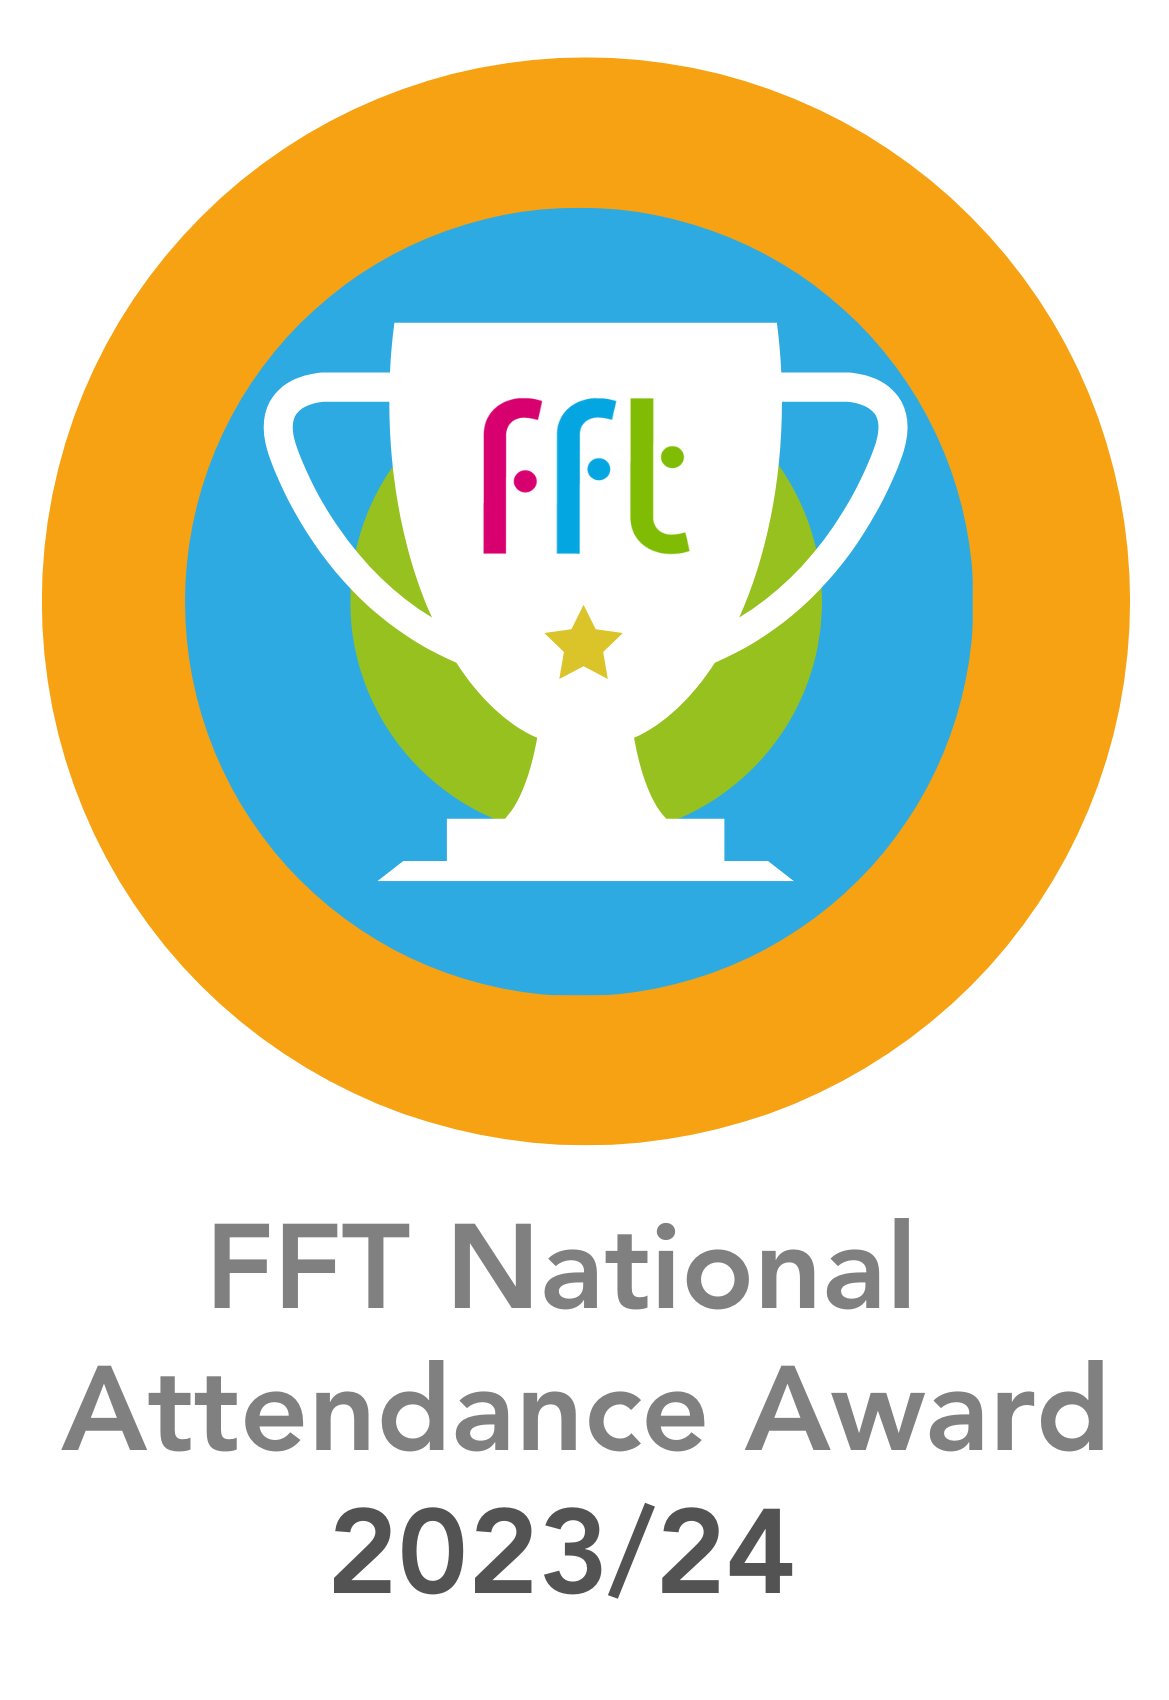 FFT Attendance 2023/24 Award